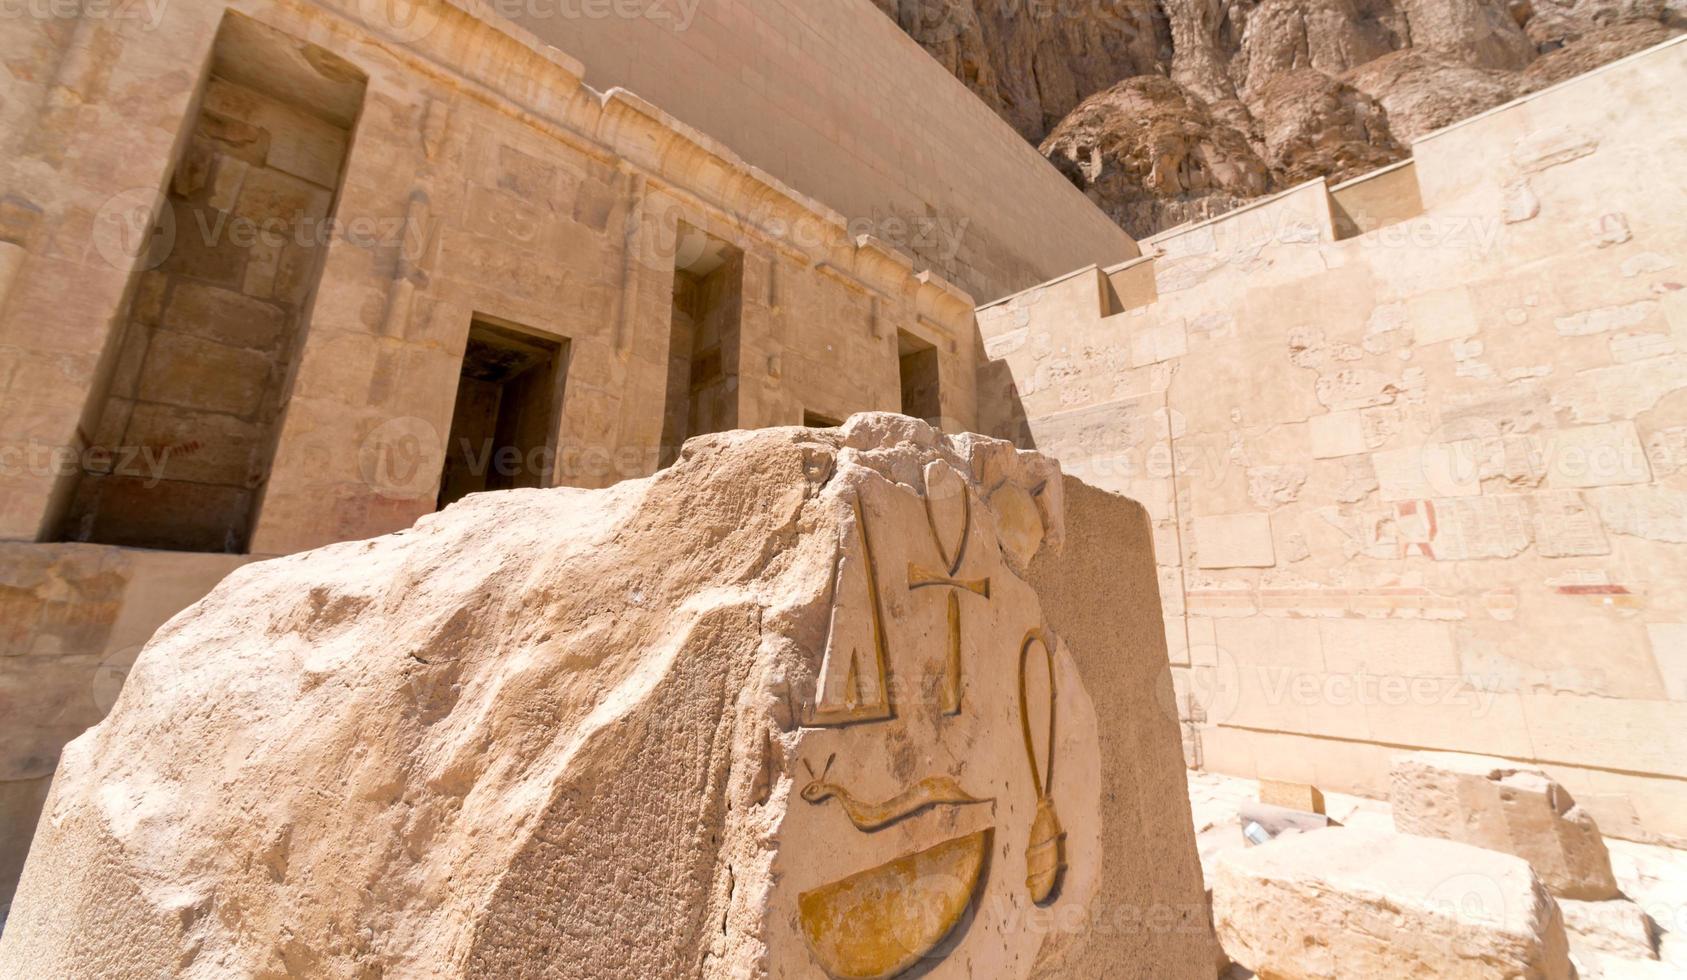 alter tempel mit hieroglyphen an der wand in ägypten foto